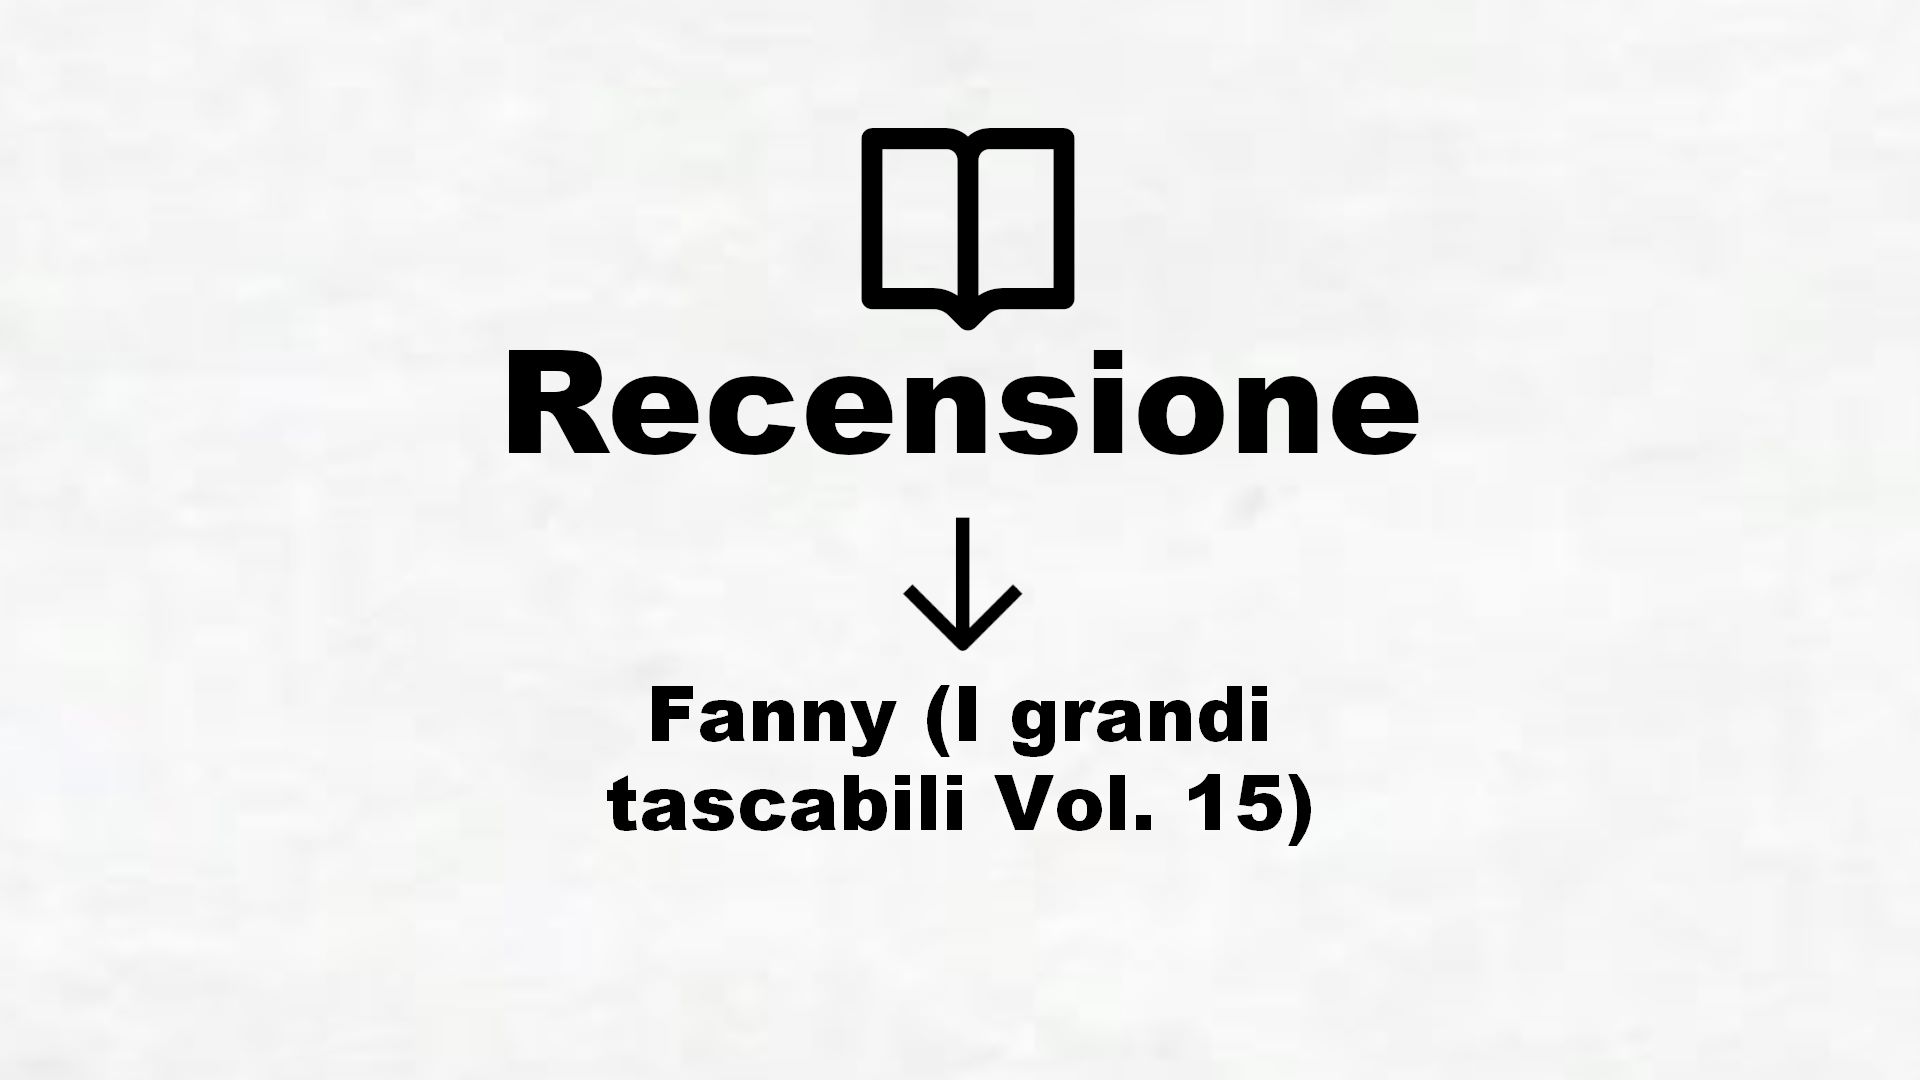 Fanny (I grandi tascabili Vol. 15) – Recensione Libro